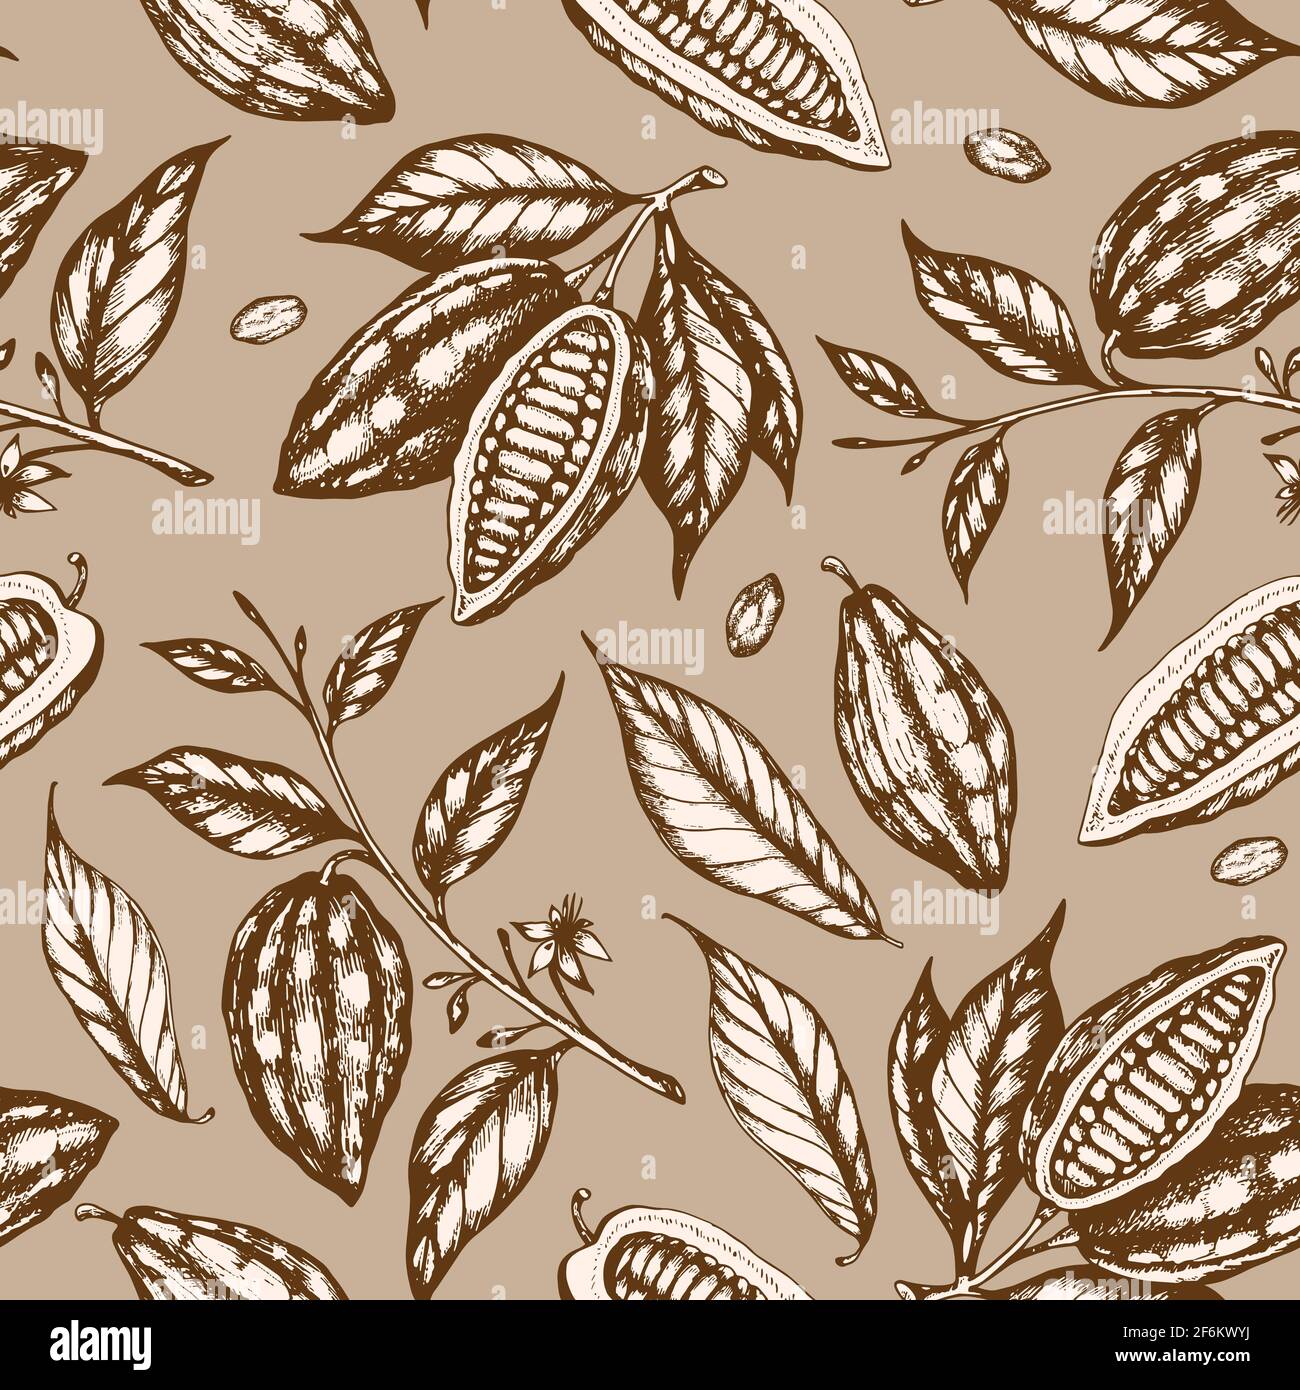 Vintage disegno a mano senza cuciture con semi di cacao e piante di cacao su sfondo marrone. Foto Stock